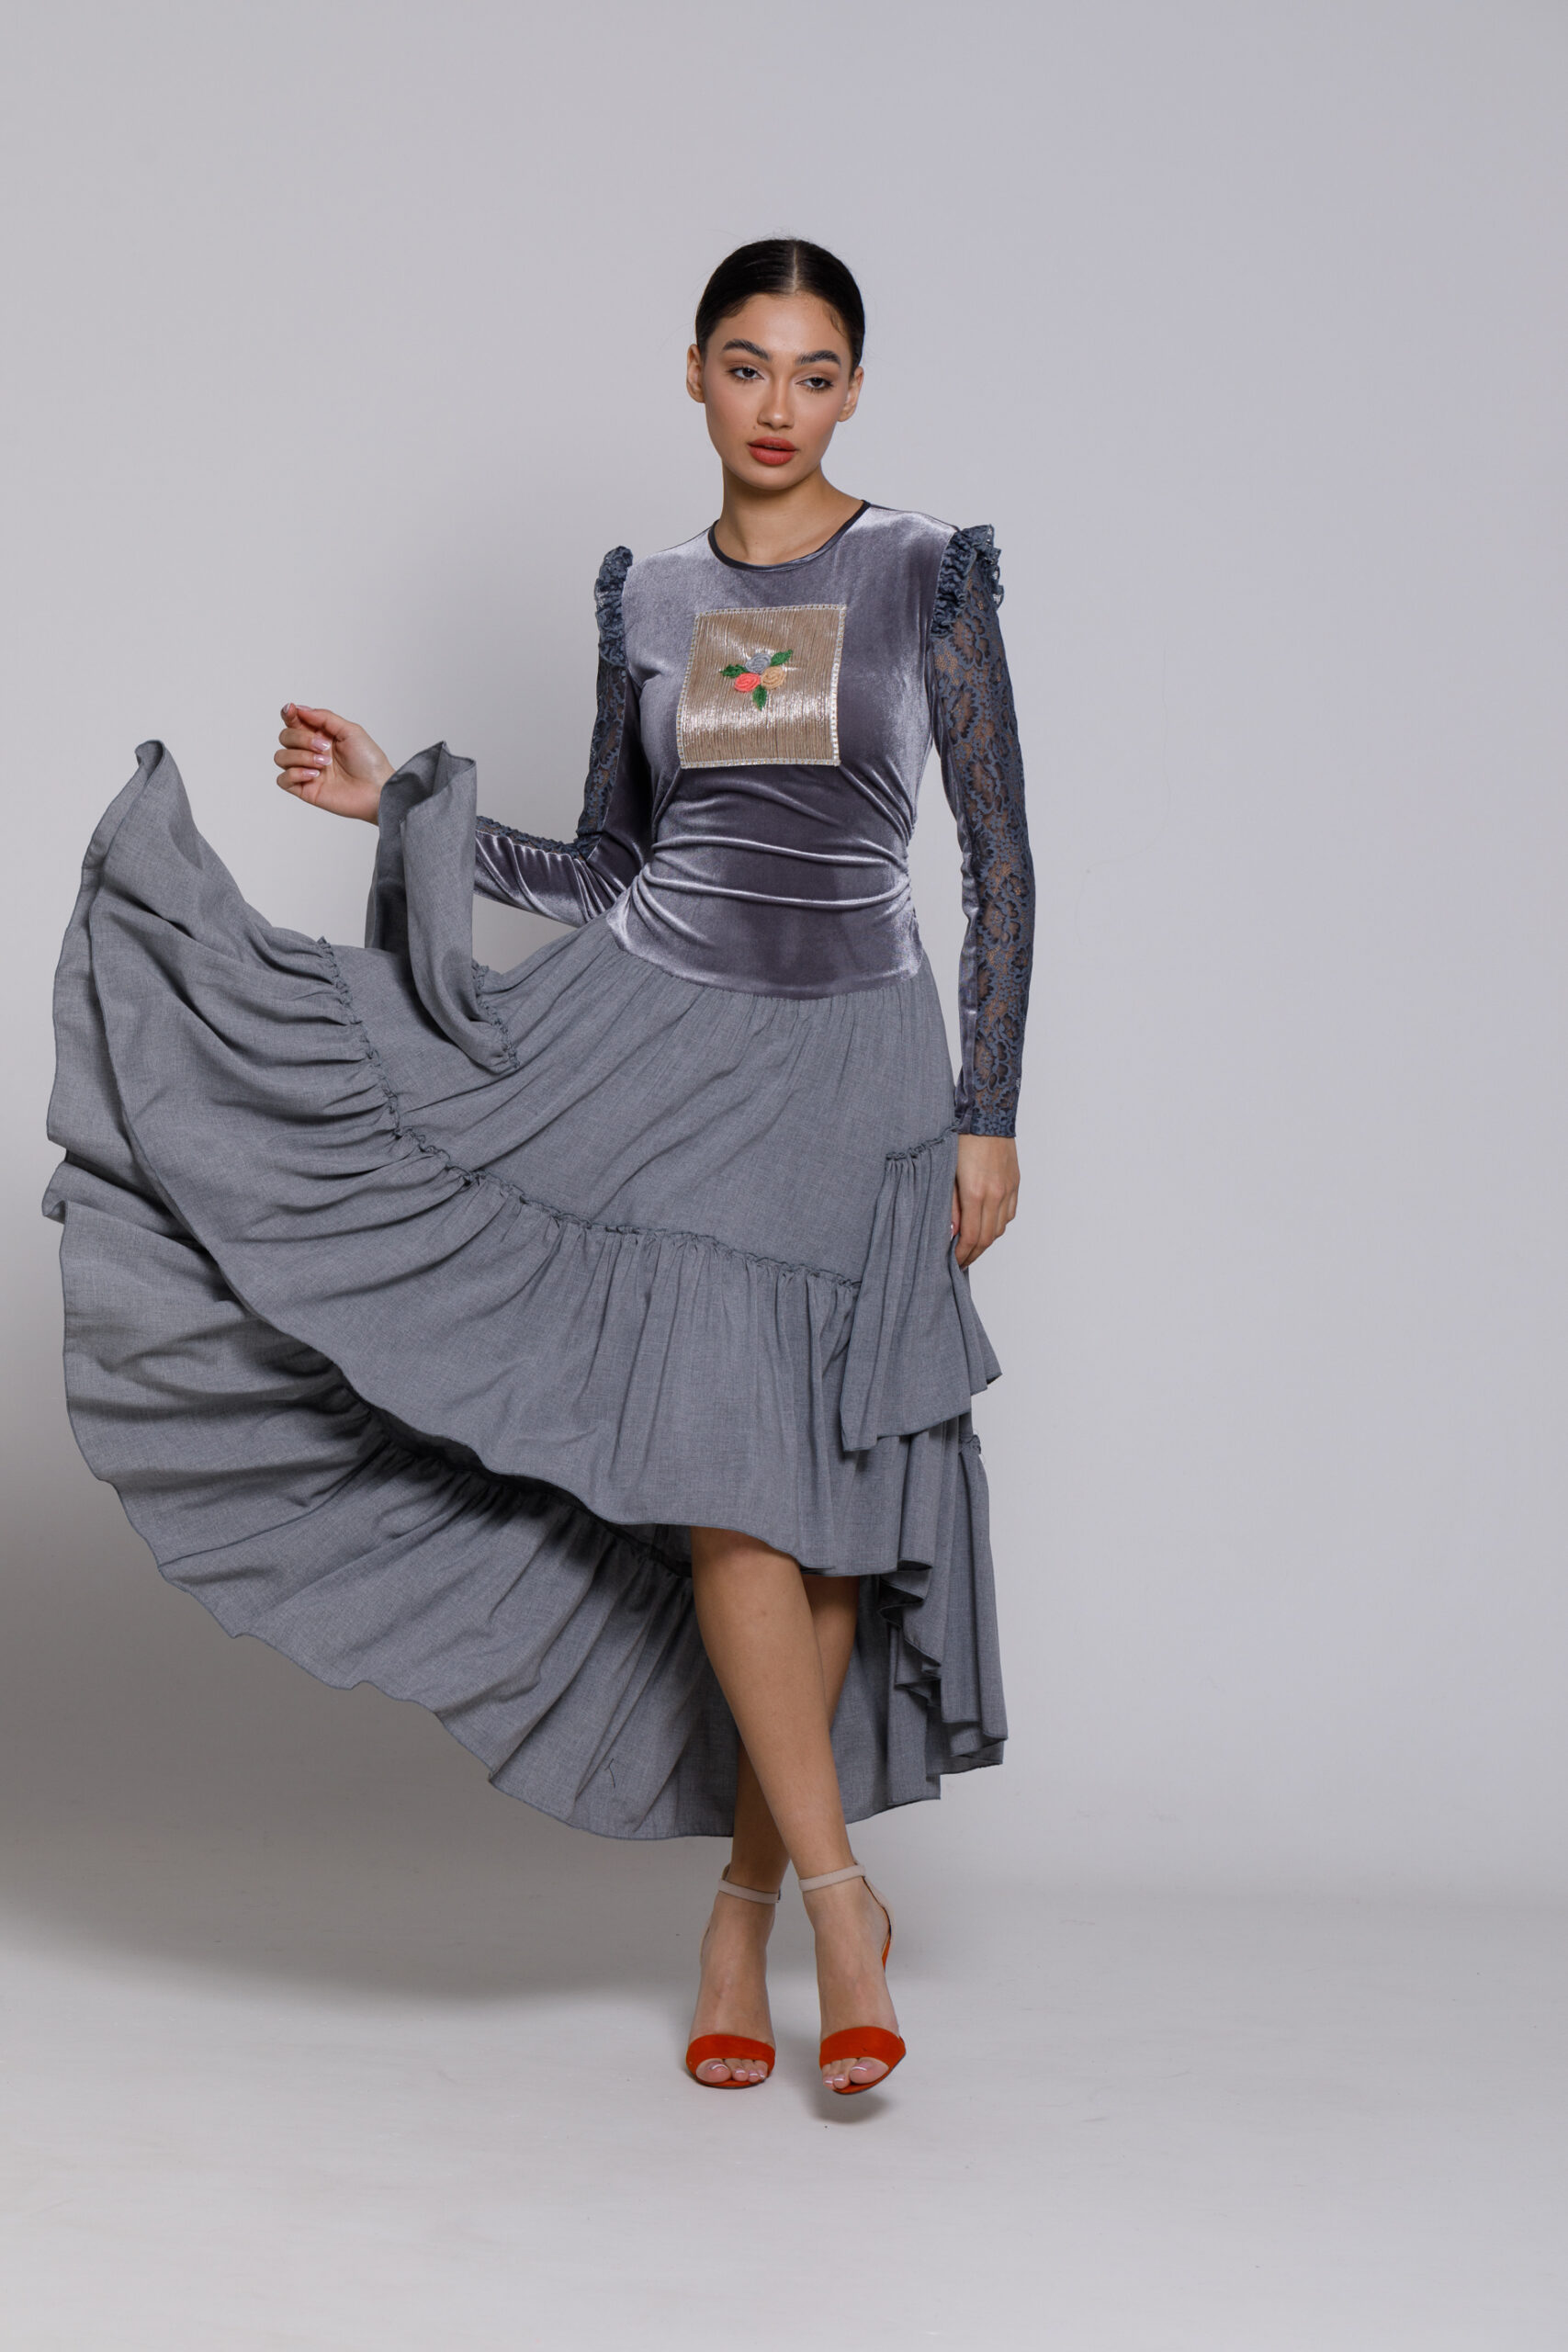 VALENTINO gray velvet and viscose dress. Natural fabrics, original design, handmade embroidery